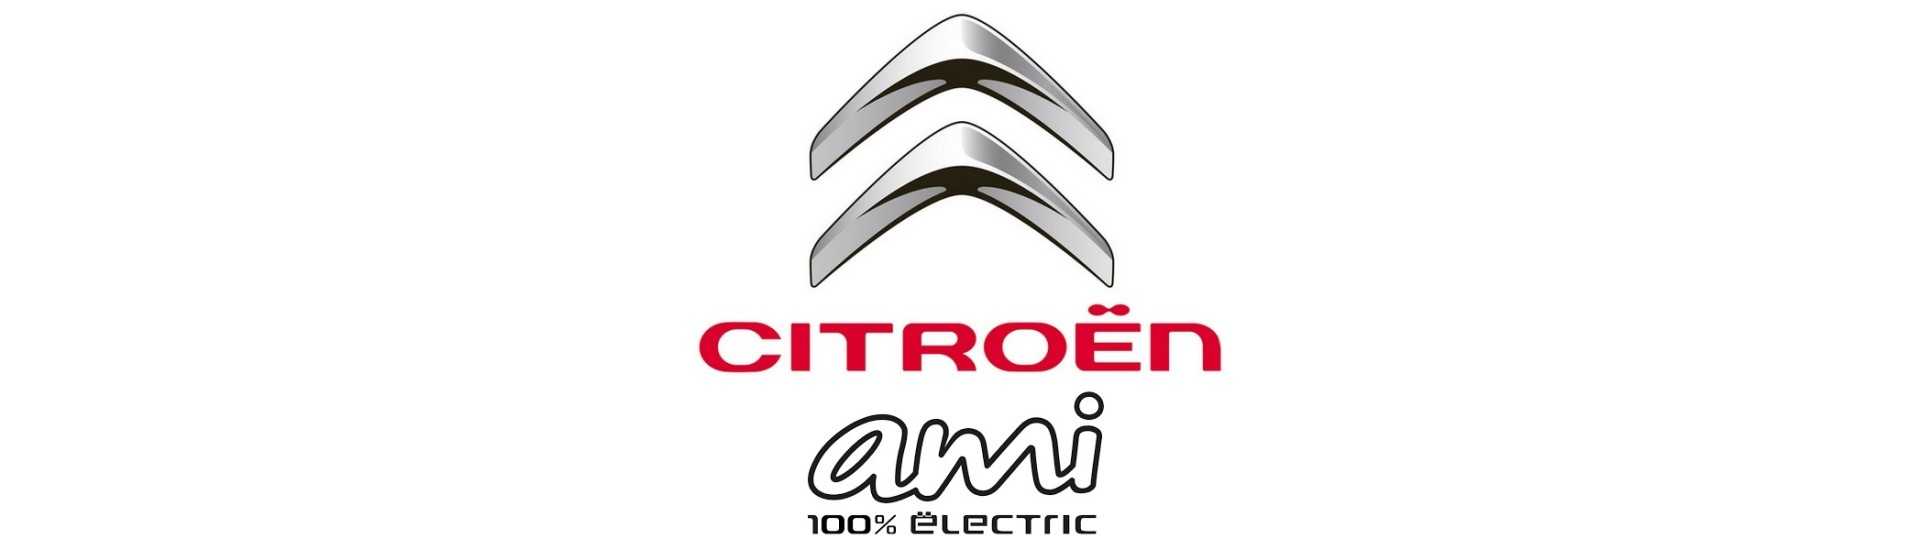 Kroppsarbete till bästa pris för bil utan tillstånd Citroën Ami